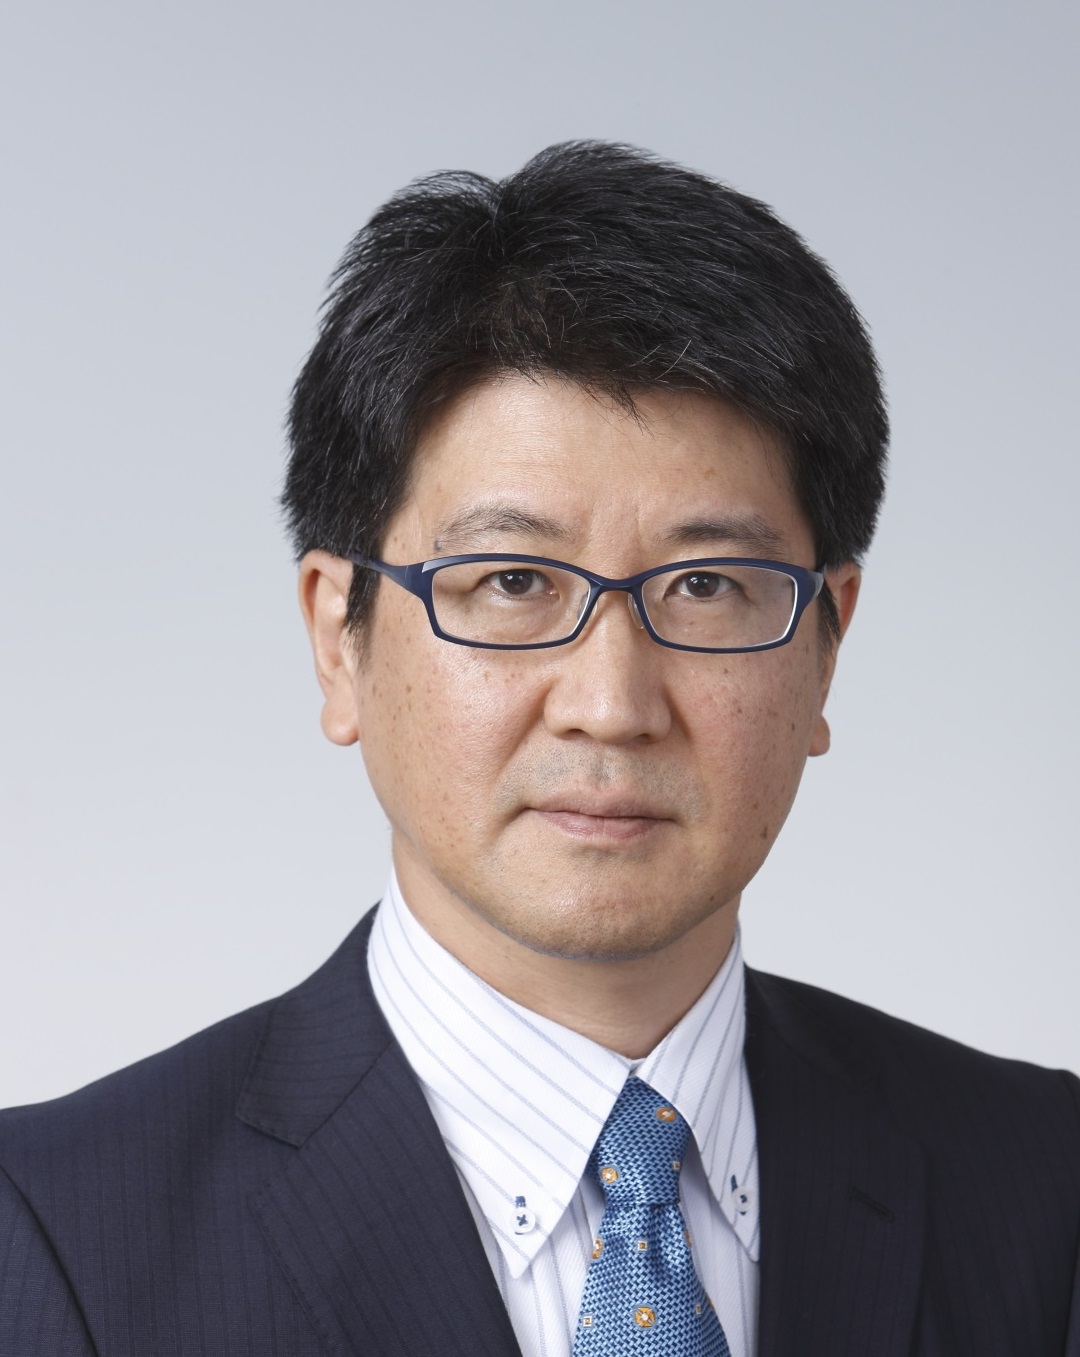 ローム 「産業機器分野に継続注力」 飯田淳取締役LSI商品開発本部本部長